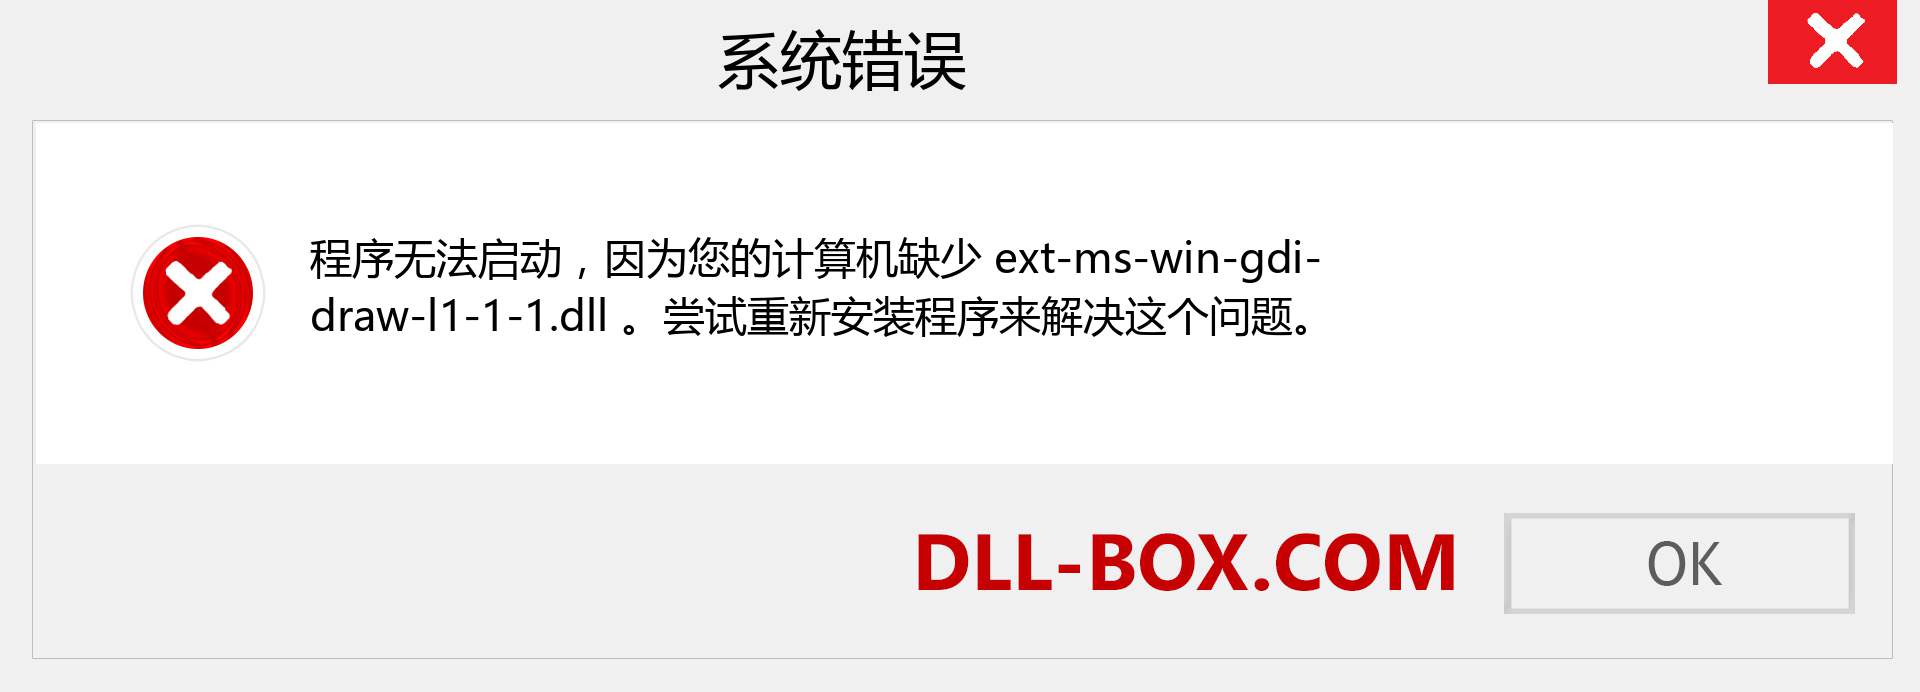 ext-ms-win-gdi-draw-l1-1-1.dll 文件丢失？。 适用于 Windows 7、8、10 的下载 - 修复 Windows、照片、图像上的 ext-ms-win-gdi-draw-l1-1-1 dll 丢失错误